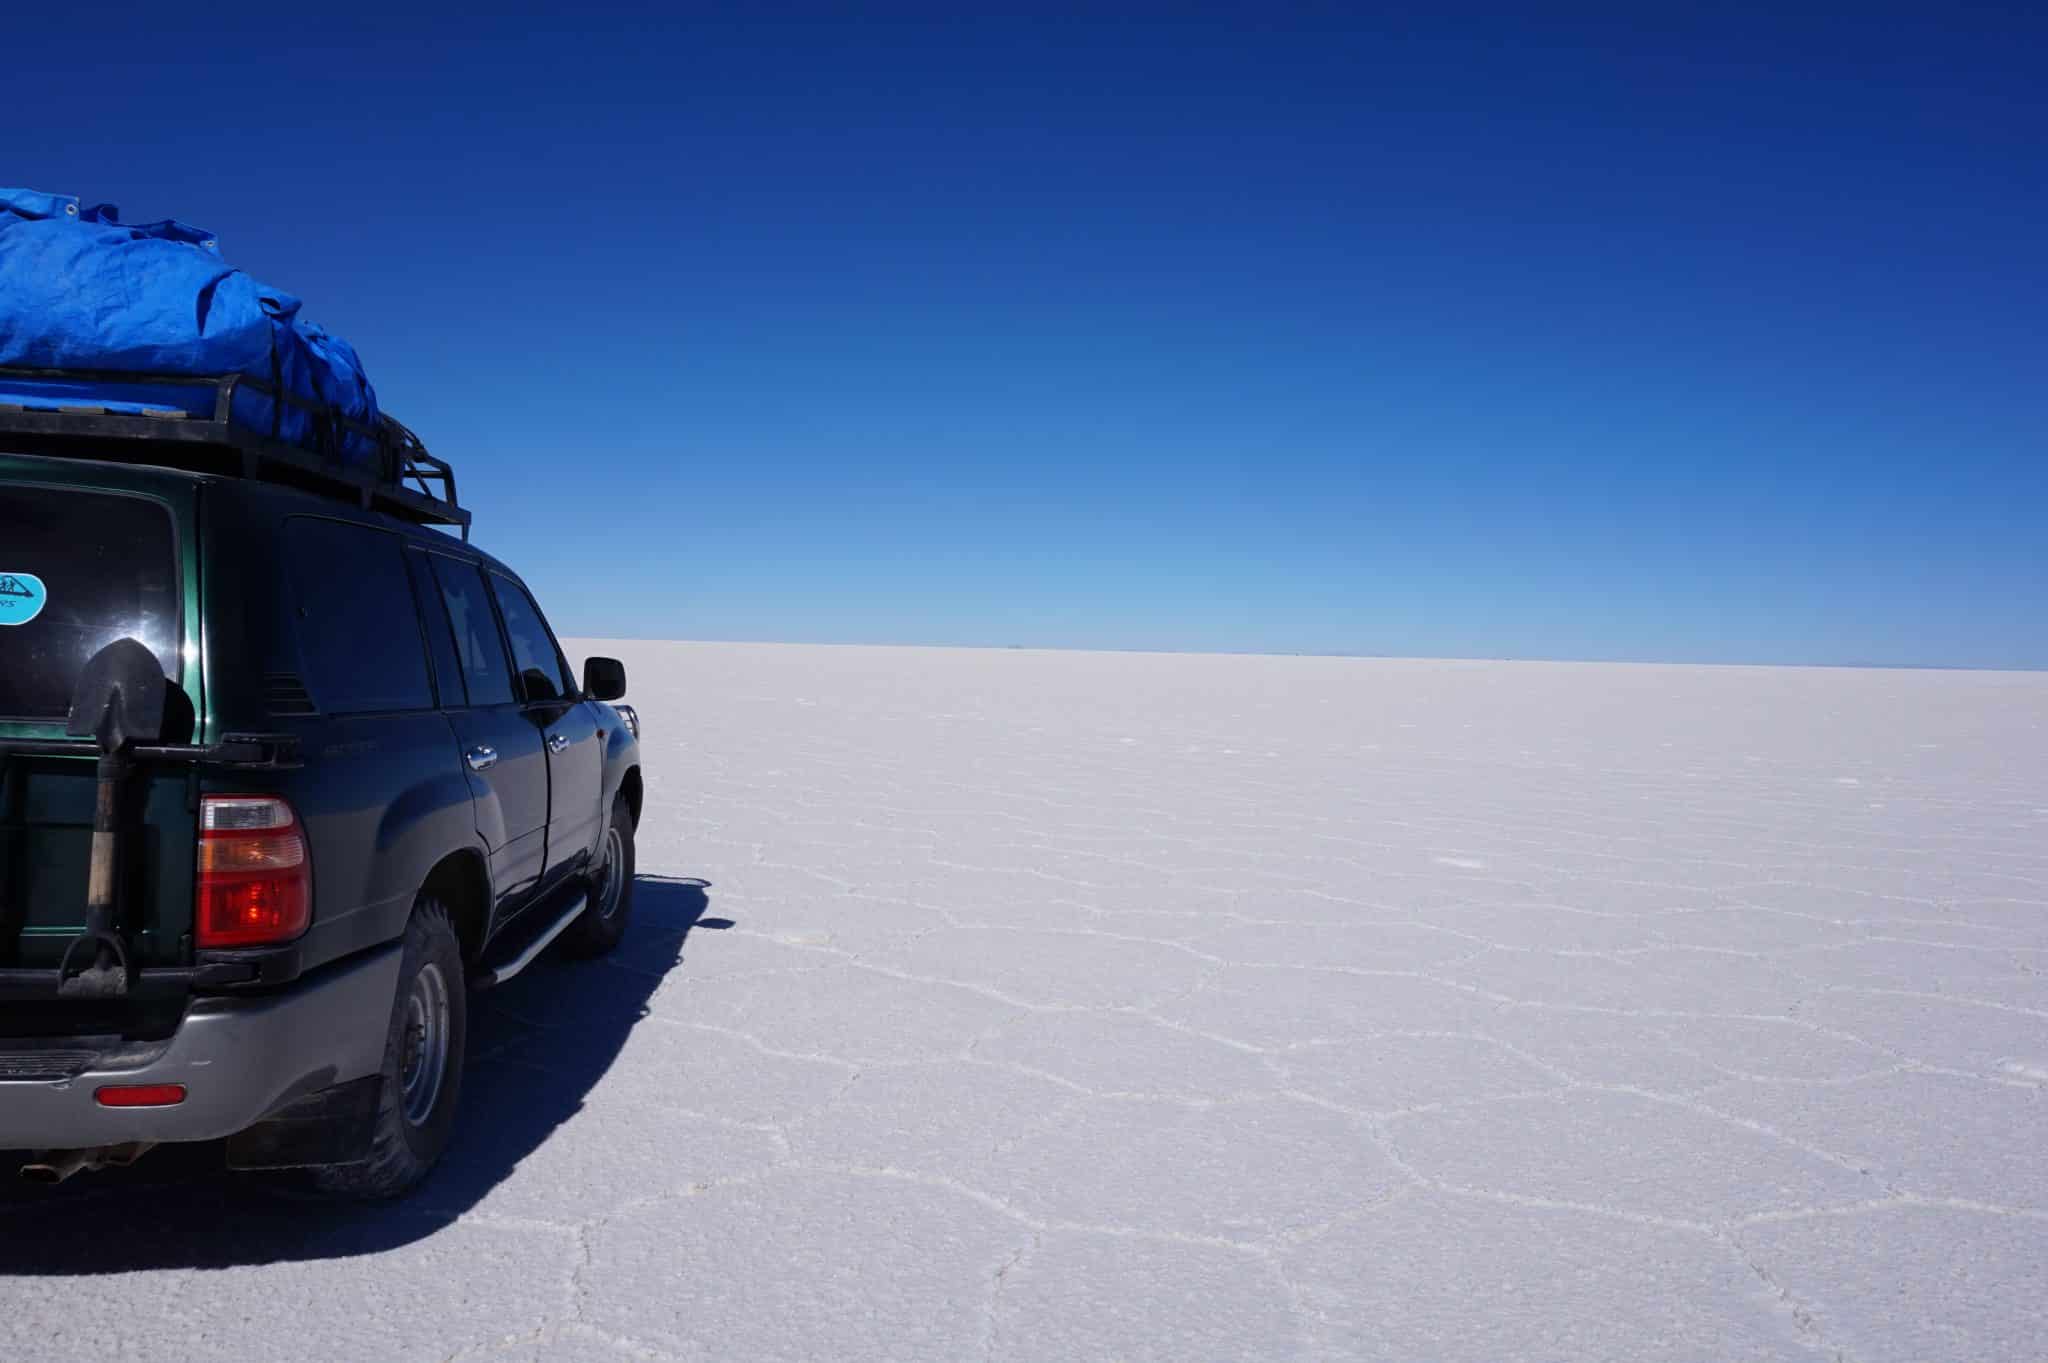 Excursion dans le désert Uyuni en Bolivie dans notre article Voyage en Bolivie : que voir et que faire en Bolivie en 5 expériences incroyables #Bolivie #Voyage #AmériqueduSud #IncontournablesBolivie #QueVoirBolivie